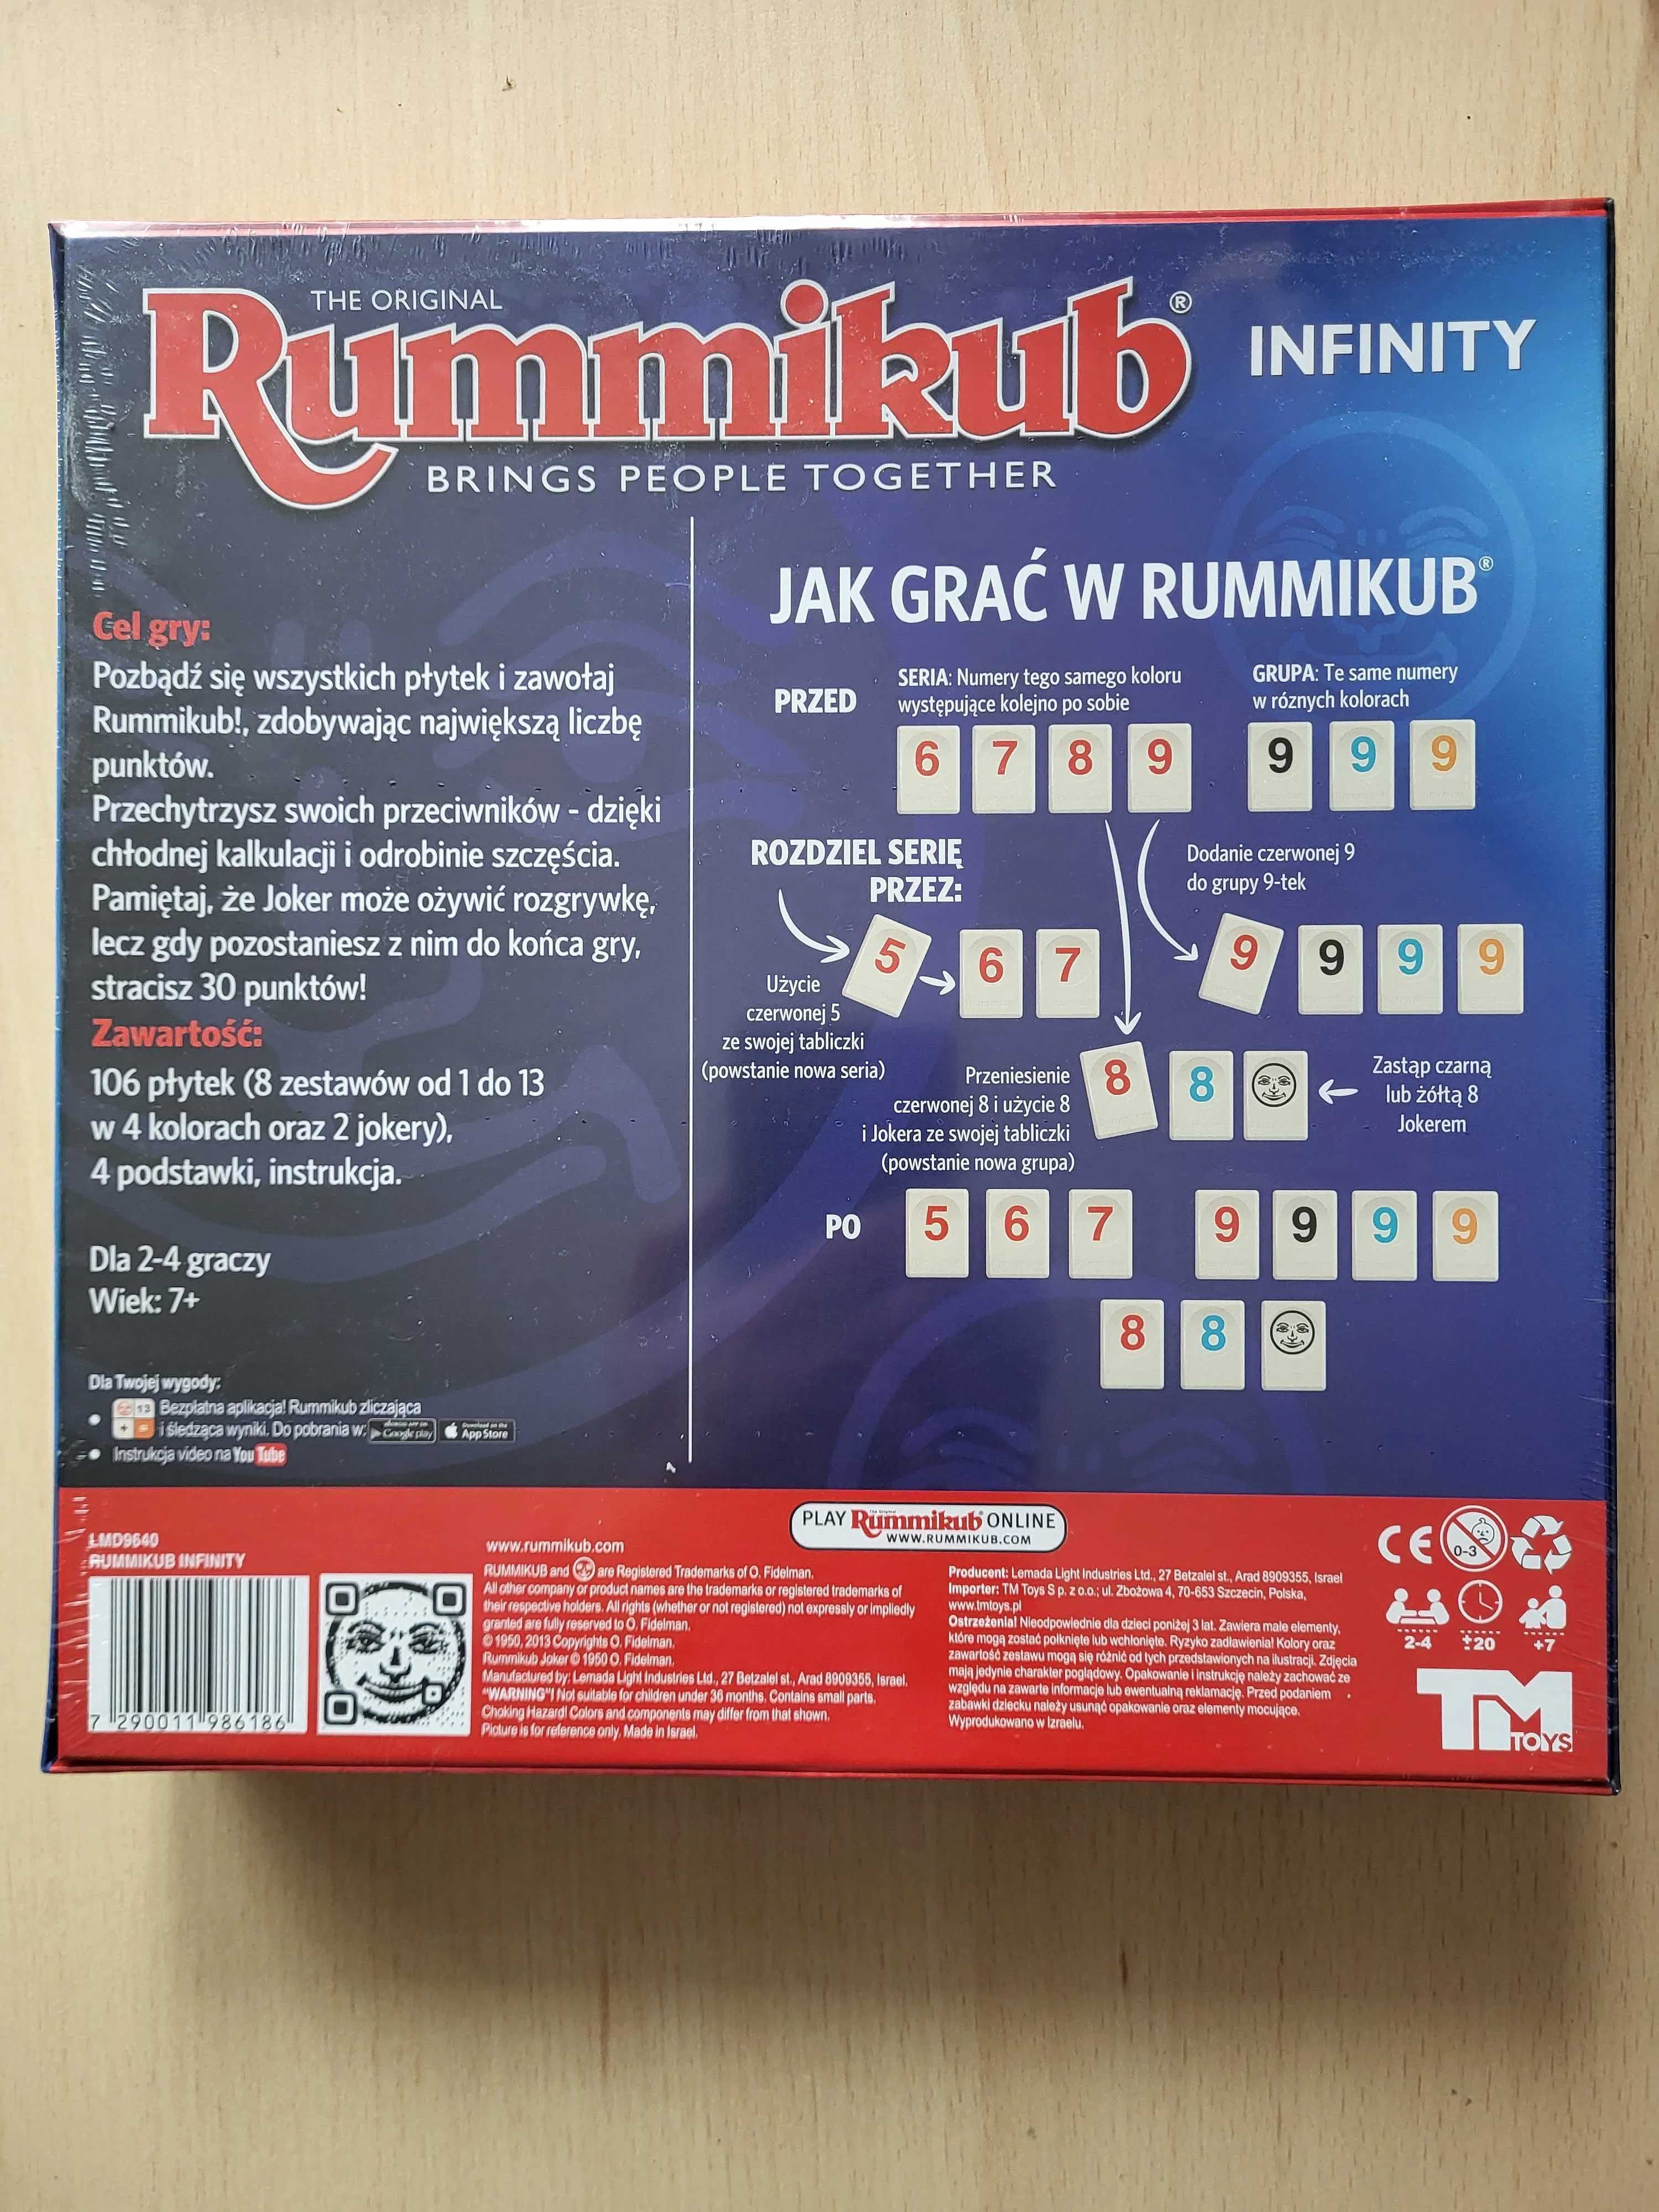 Rummikub Infinity - zapakowana w folii, nowa.